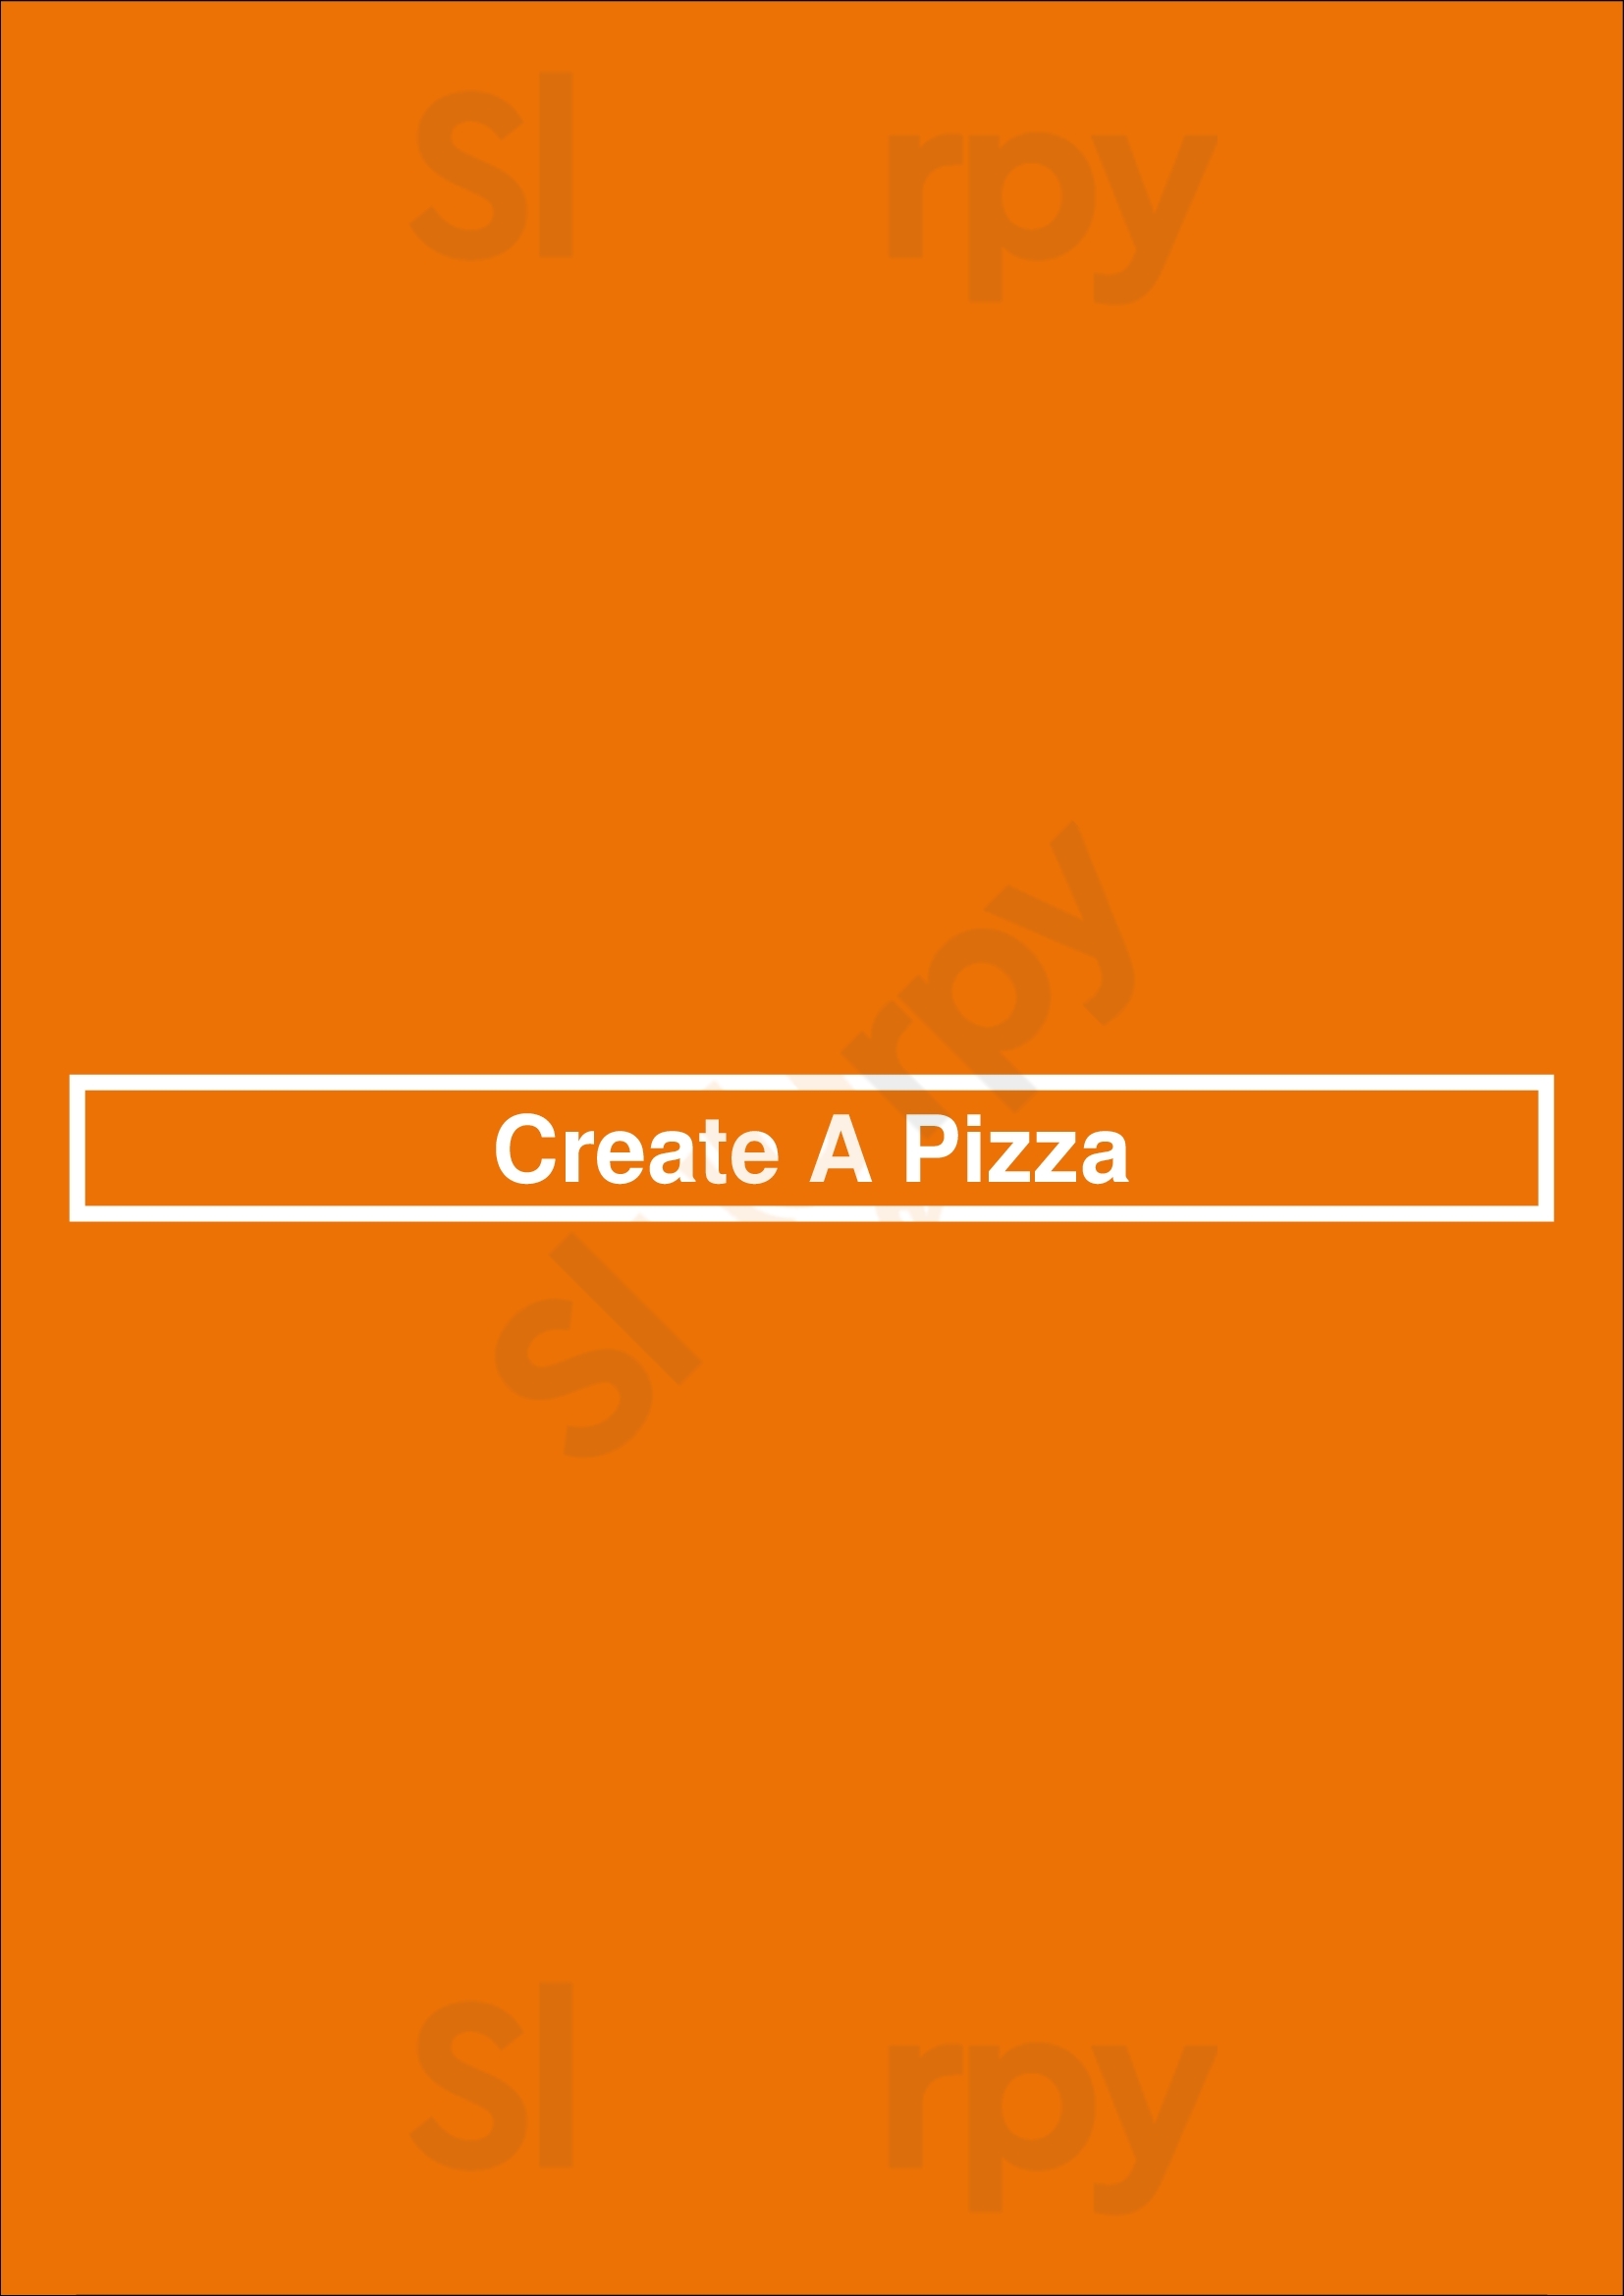 Create A Pizza Rochester Menu - 1